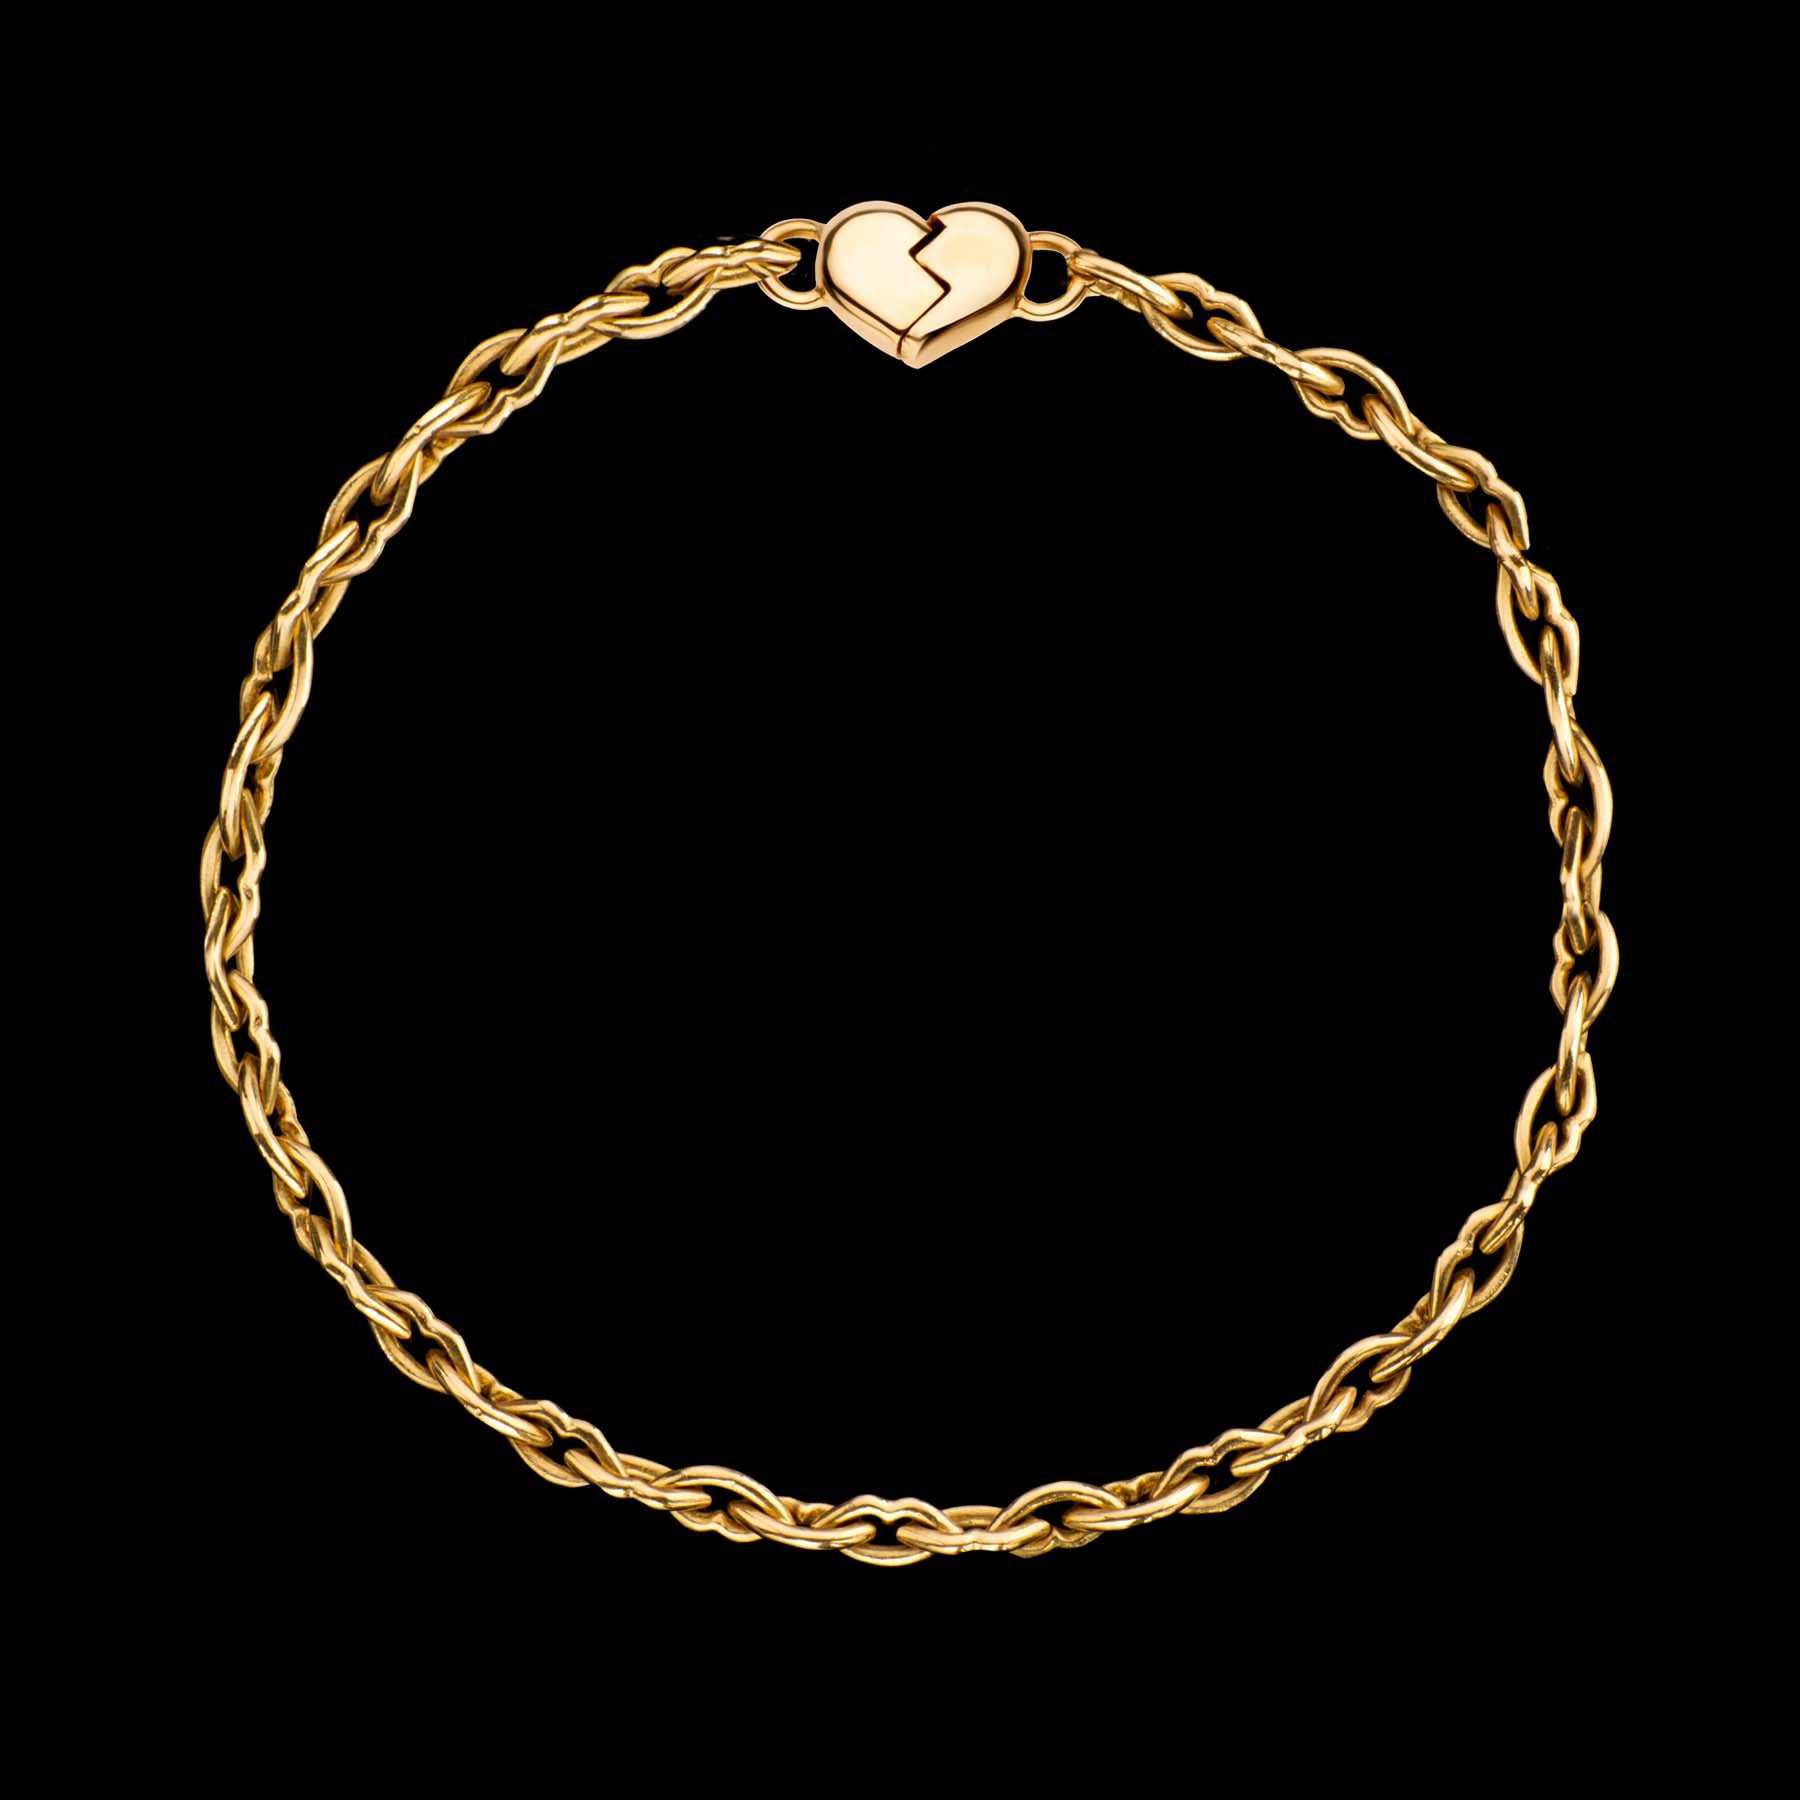 Love & Kisses Chain Bracelet by designer Solange Azagury Partridge - 18 carat Yellow Gold - front view